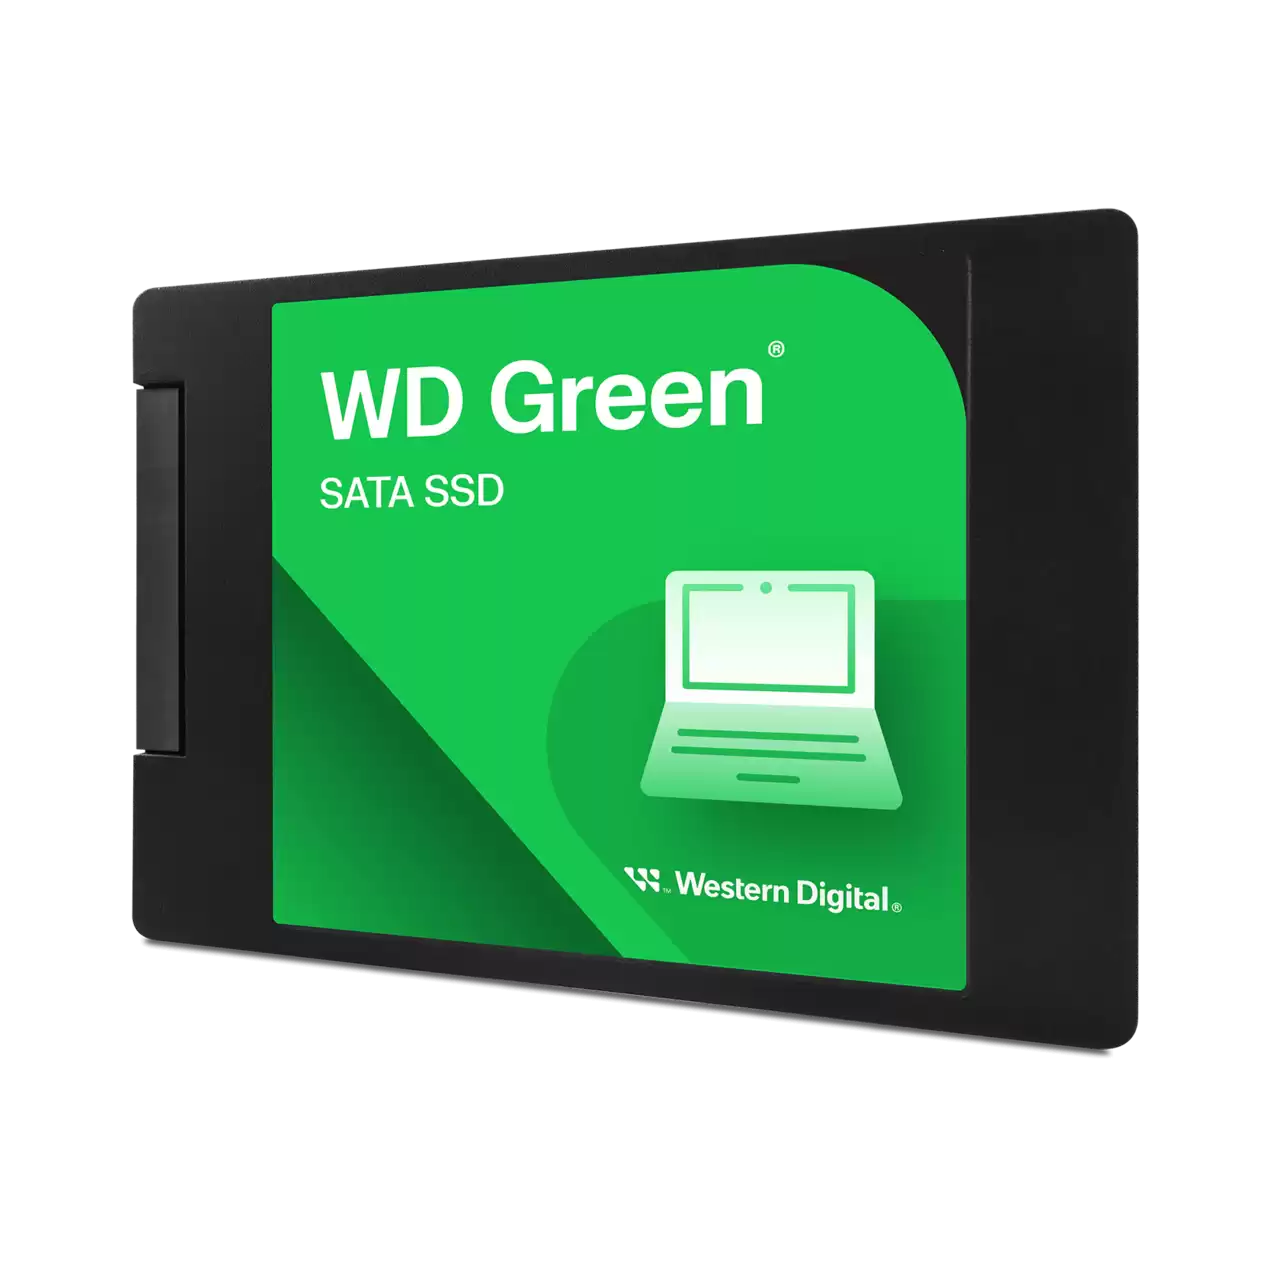 WD Green™ 3D NAND 240GB SATA SSD